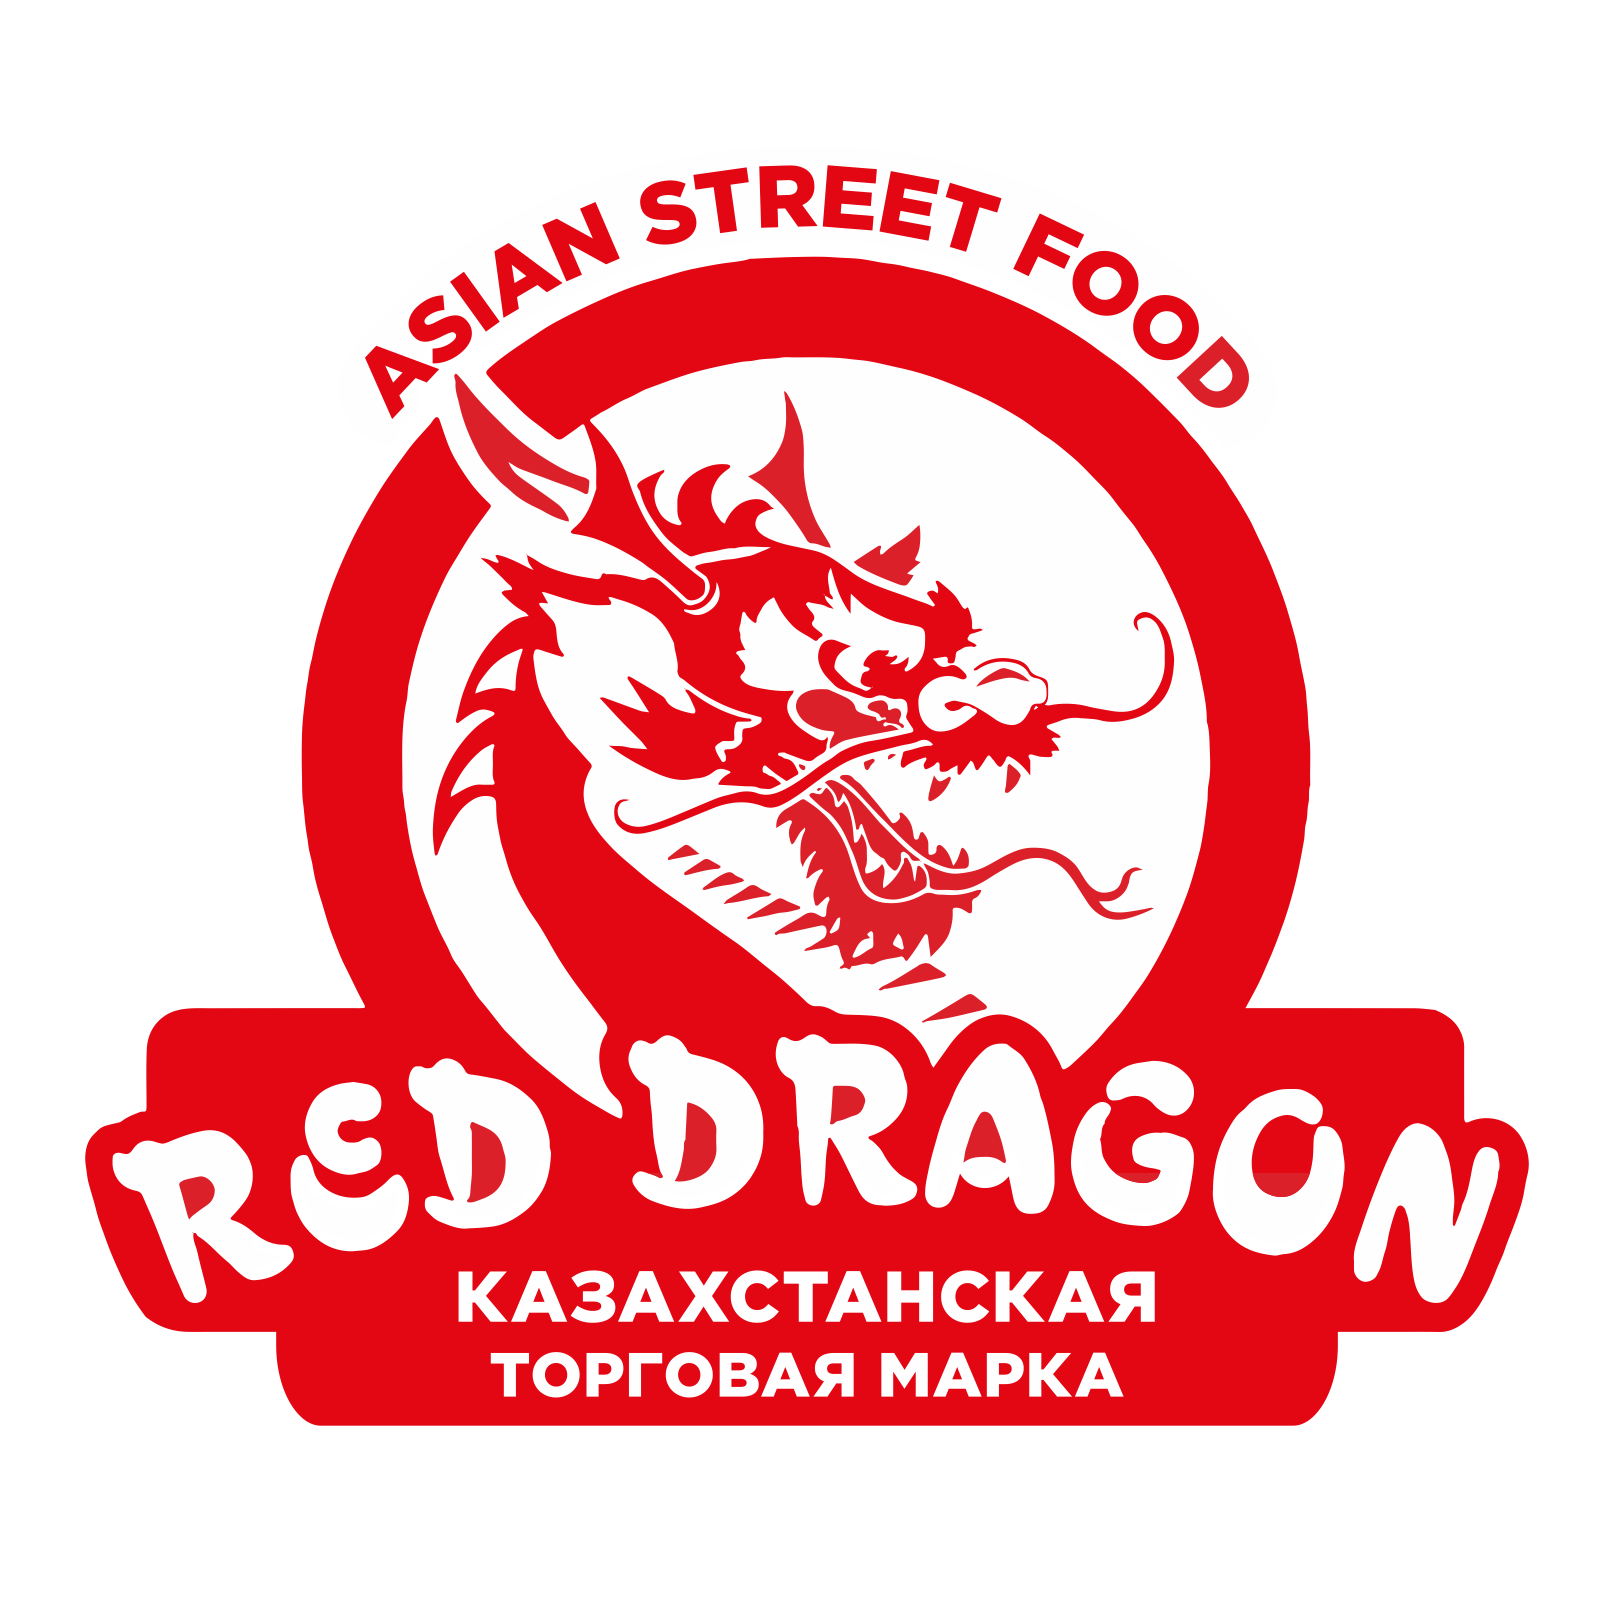 Красный дракон франшиза отзывы кейс продвижение товара